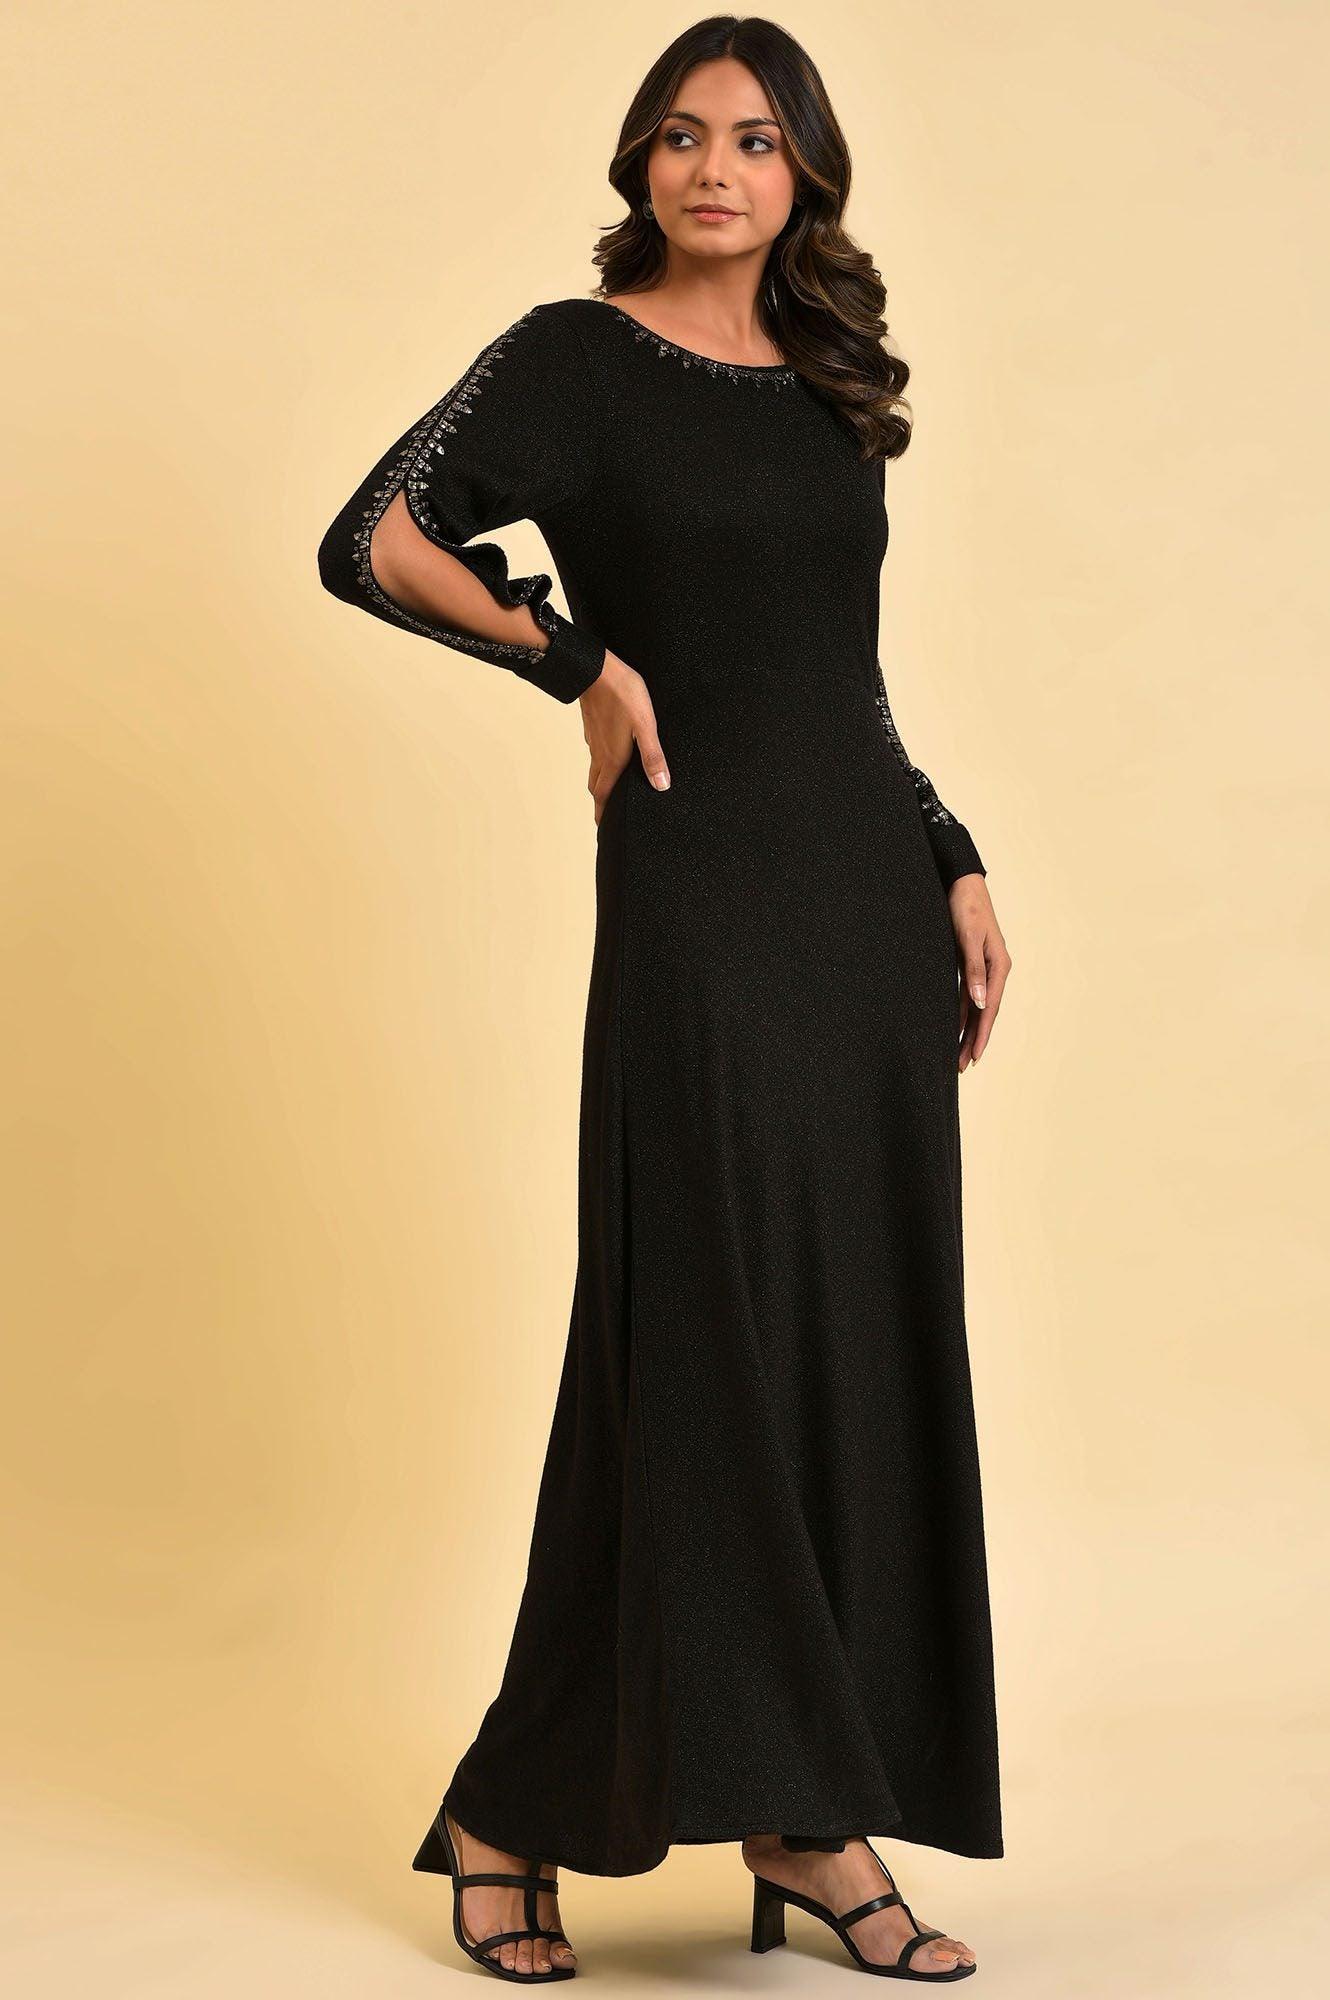 Black Full Length Embellished Dress - wforwoman